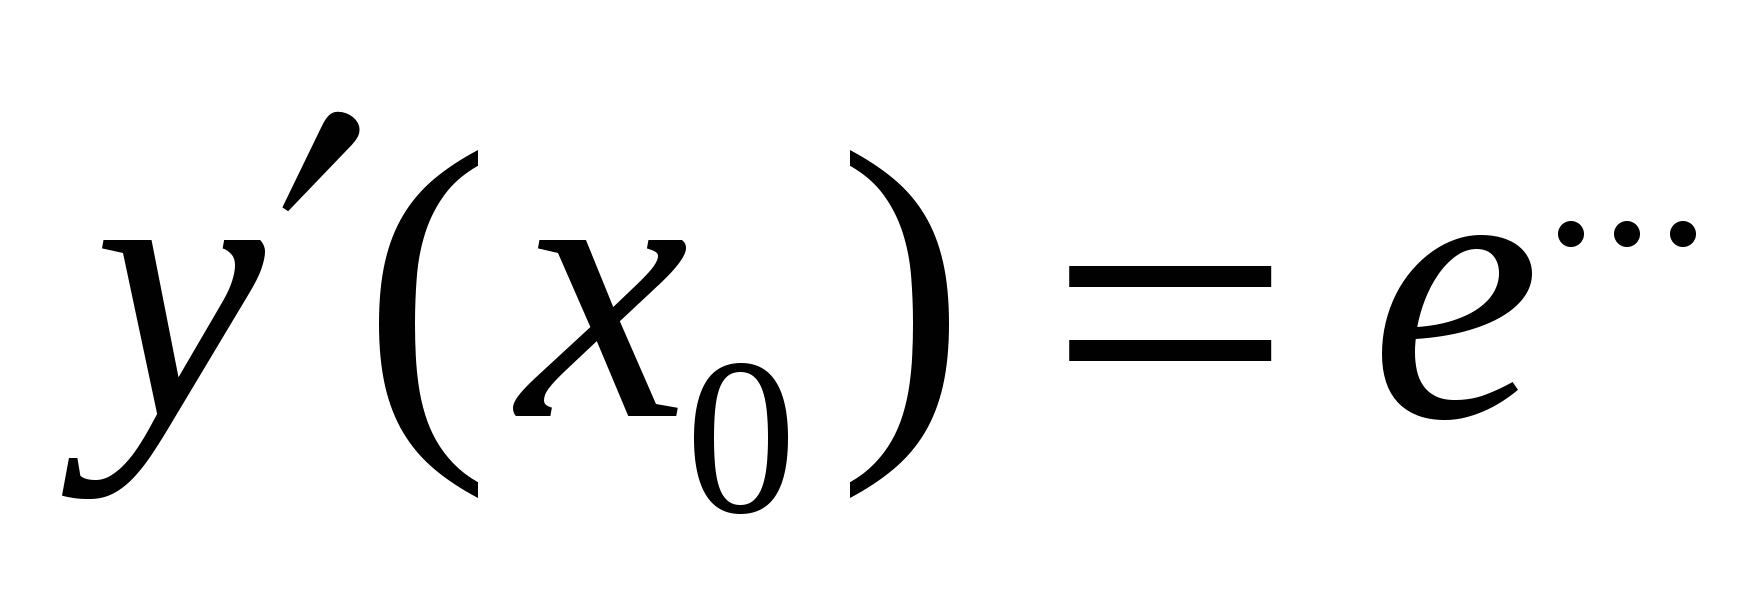 Урок математики (проблемно-эвристический) по теме: «Число е. Понятие натурального логарифма. Производная показательной функции».